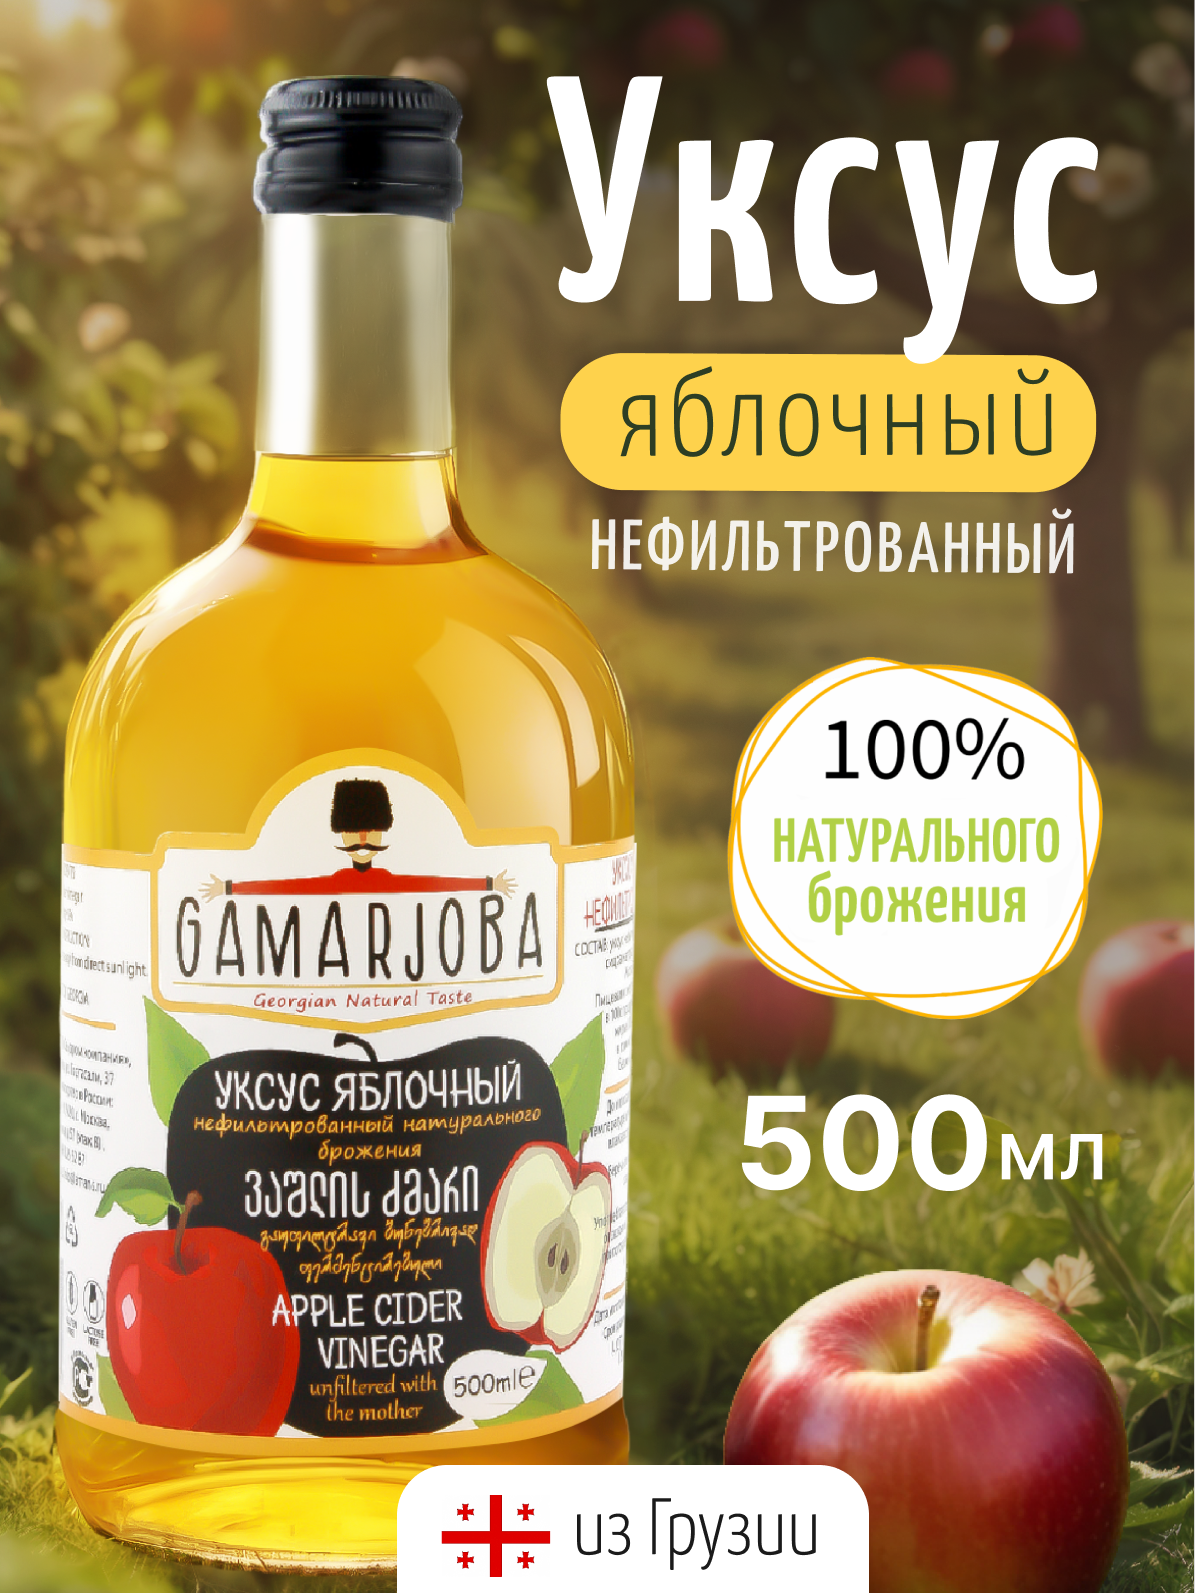 Уксус яблочный нефильтрованный натурального брожения 500мл "GAMARJOBA" (Грузия)